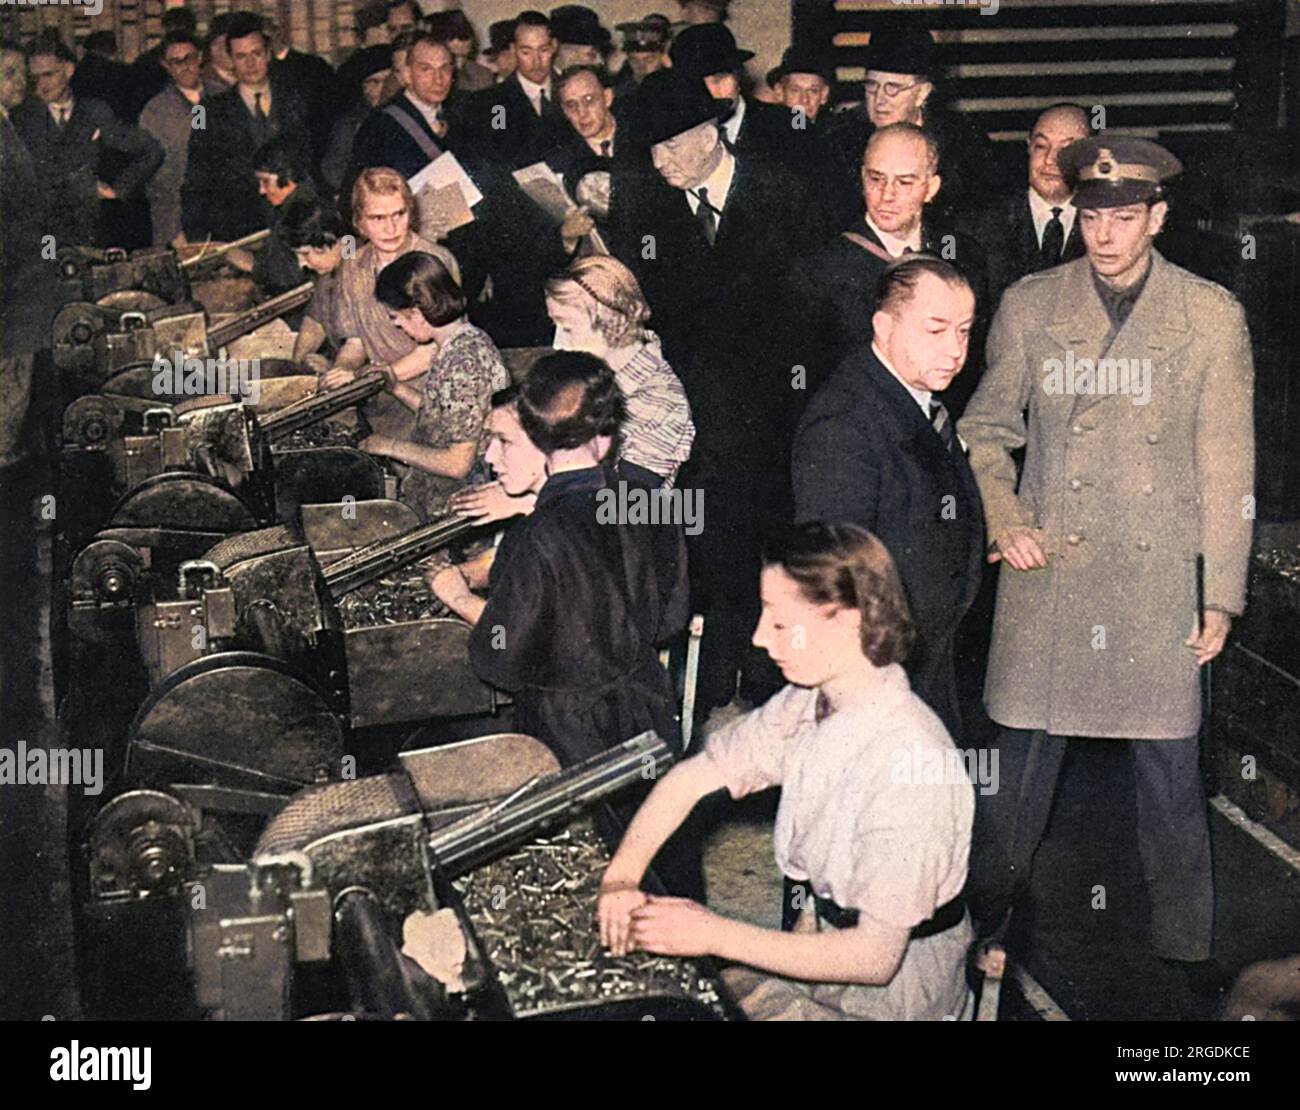 Le roi George VI reçoit une visite d'inspection d'une usine de munitions royales et voit de première main l'immense effort mis en œuvre pour produire des armes, en l'occurrence des canons antiaériens et antichars. La photo montre le roi regardant quelques-unes des travailleuses de l'usine trier les munitions. Banque D'Images